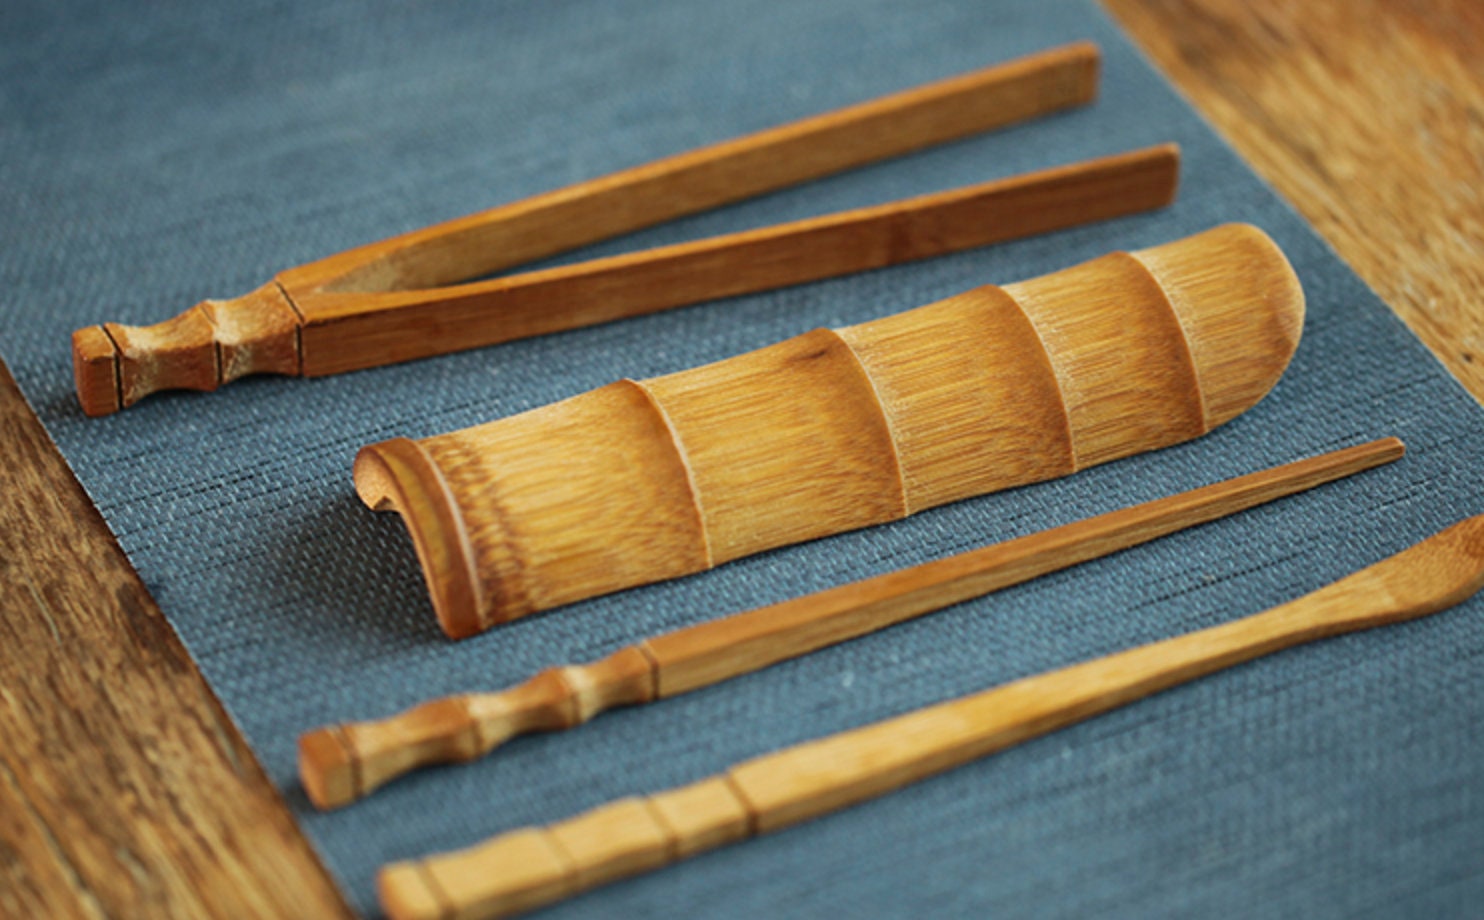 Gohobi Chinese Gongfu Tea Accessories tools set (Tea Spoon, Tea Scoop, Tea Tongs, Tea Pick, Tea Brush, Tea Strainer,basket) tea ceremony